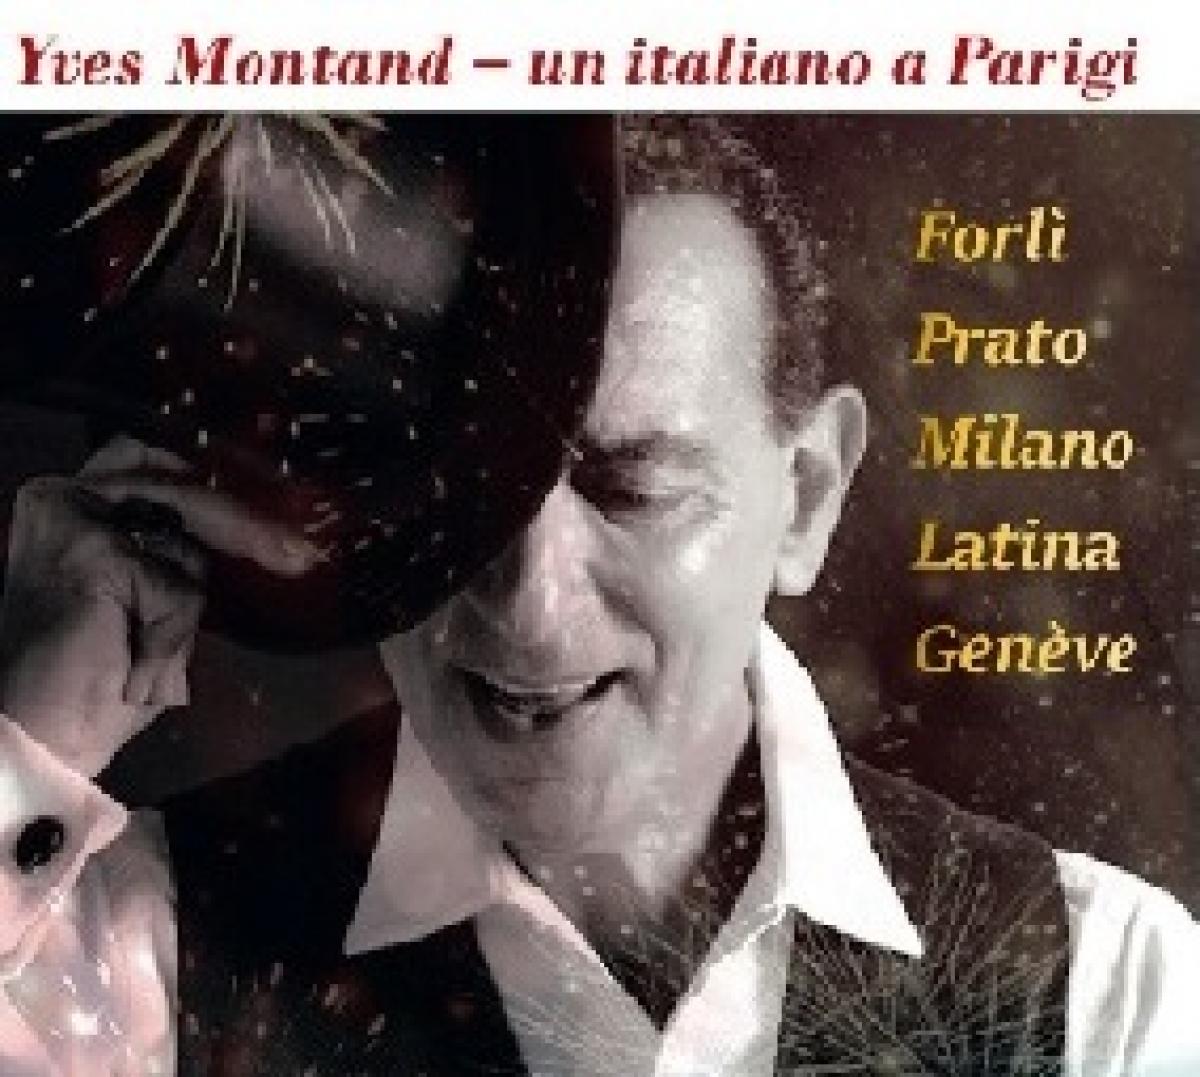 Blog – Yves Montand – Forlì e Prato 24-26 novembre